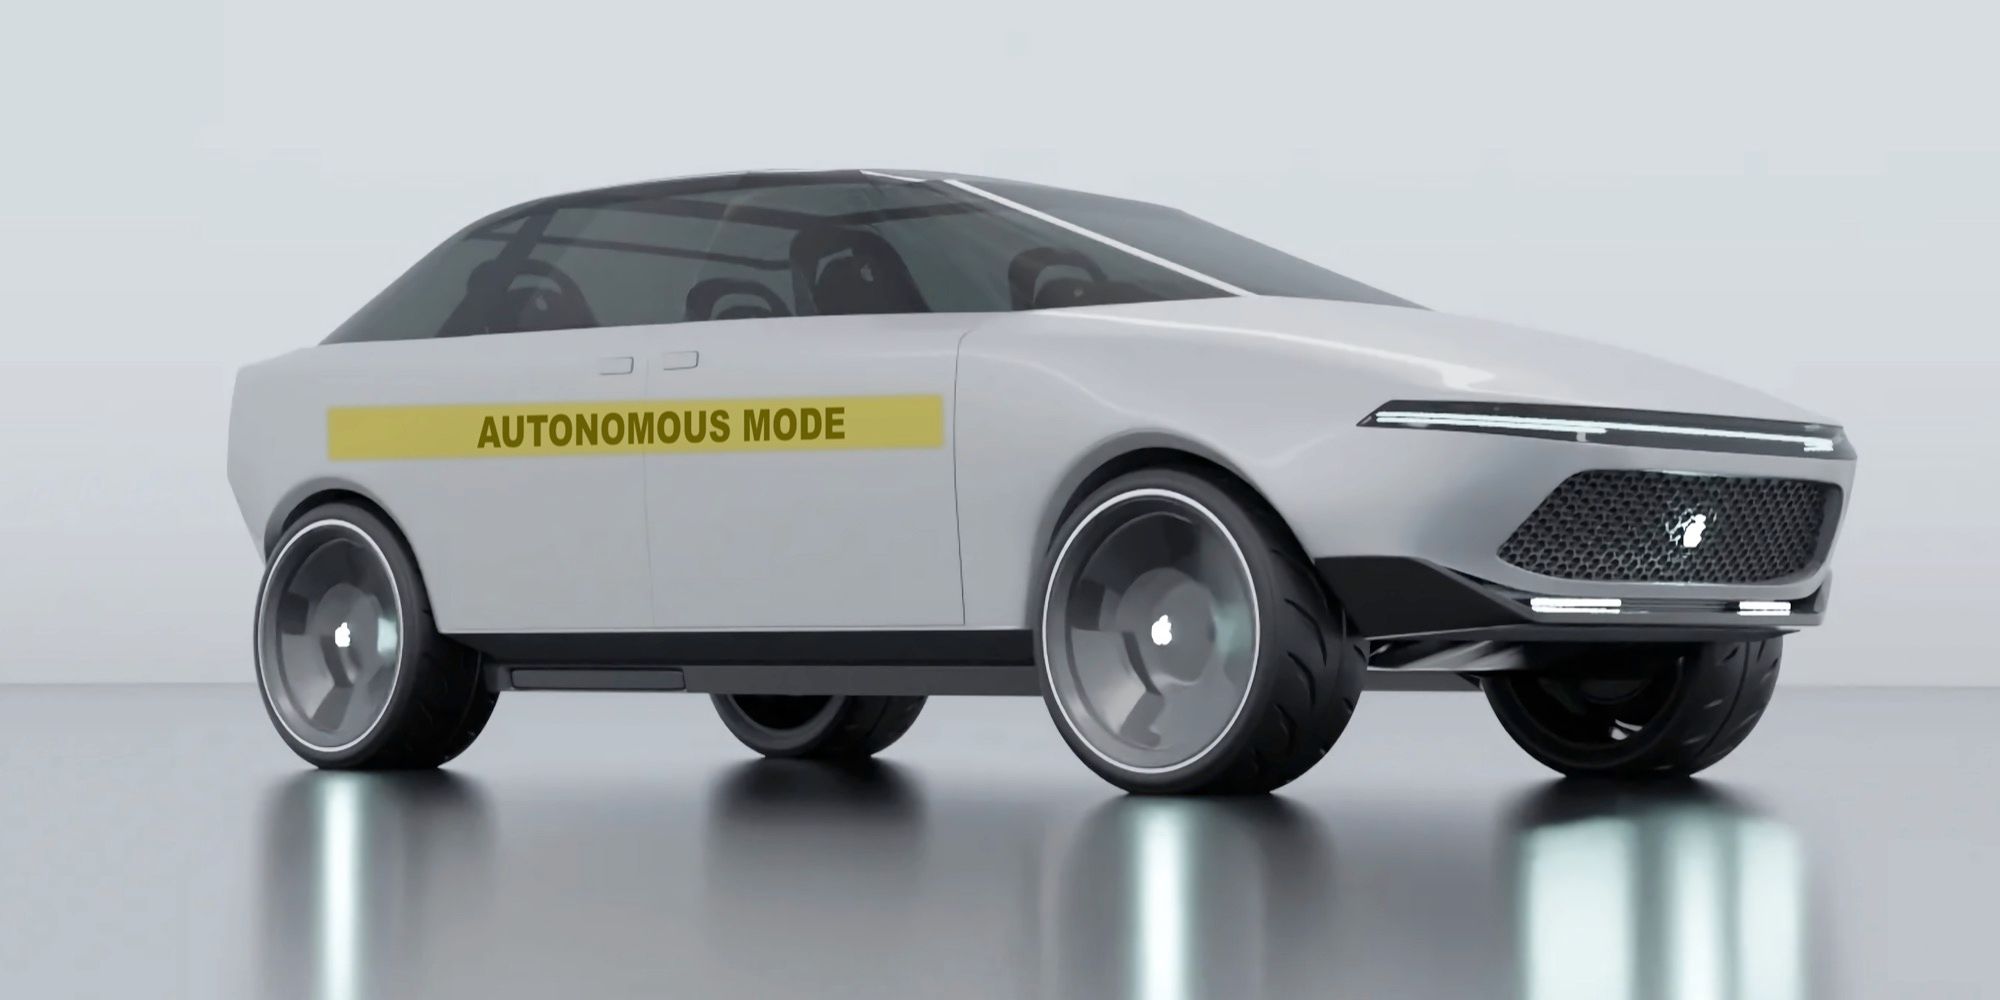 La patente de Apple Car revela un sistema de advertencia externo cuando se conduce solo